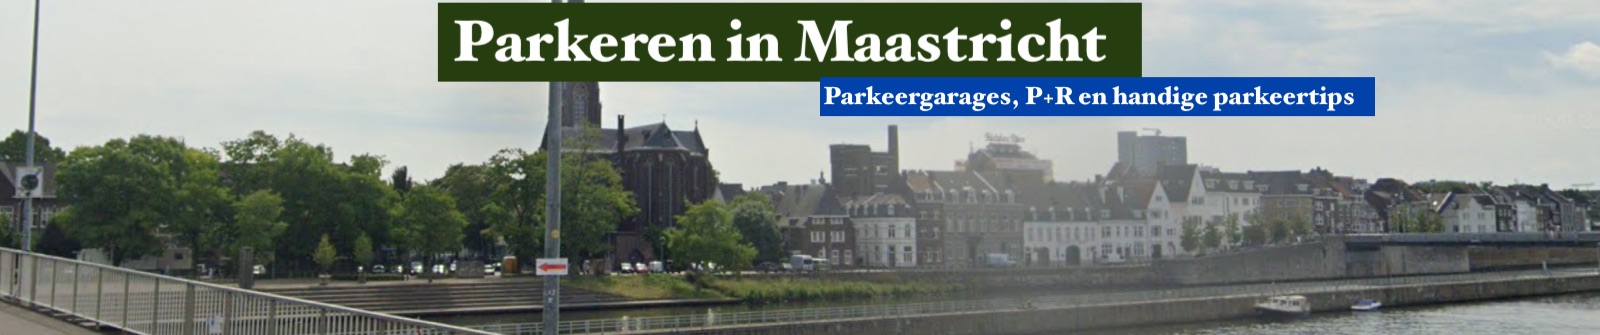 Parkeergarages Maastricht